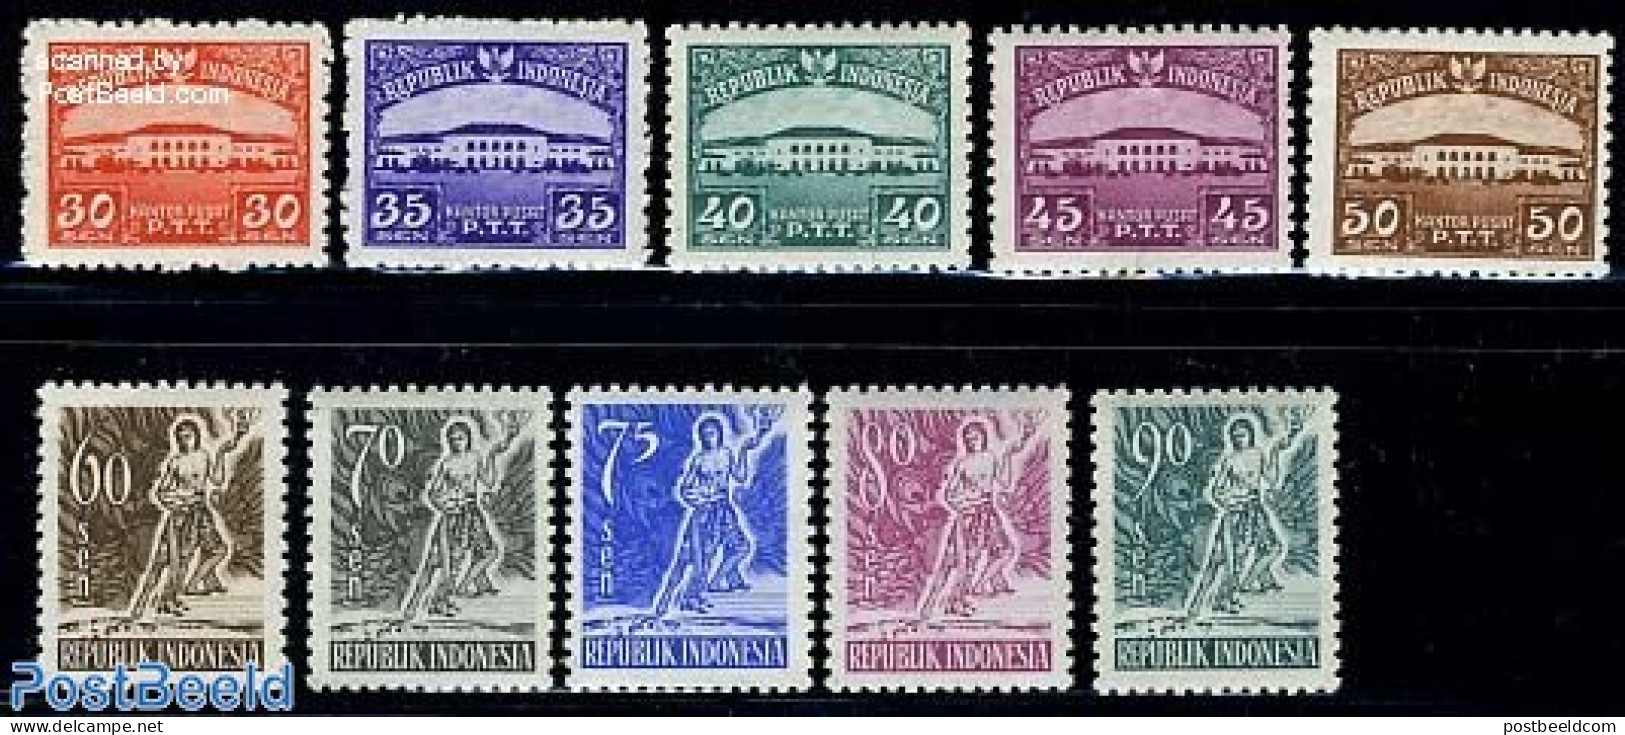 Indonesia 1953 Definitives 10v, Mint NH - Indonesien